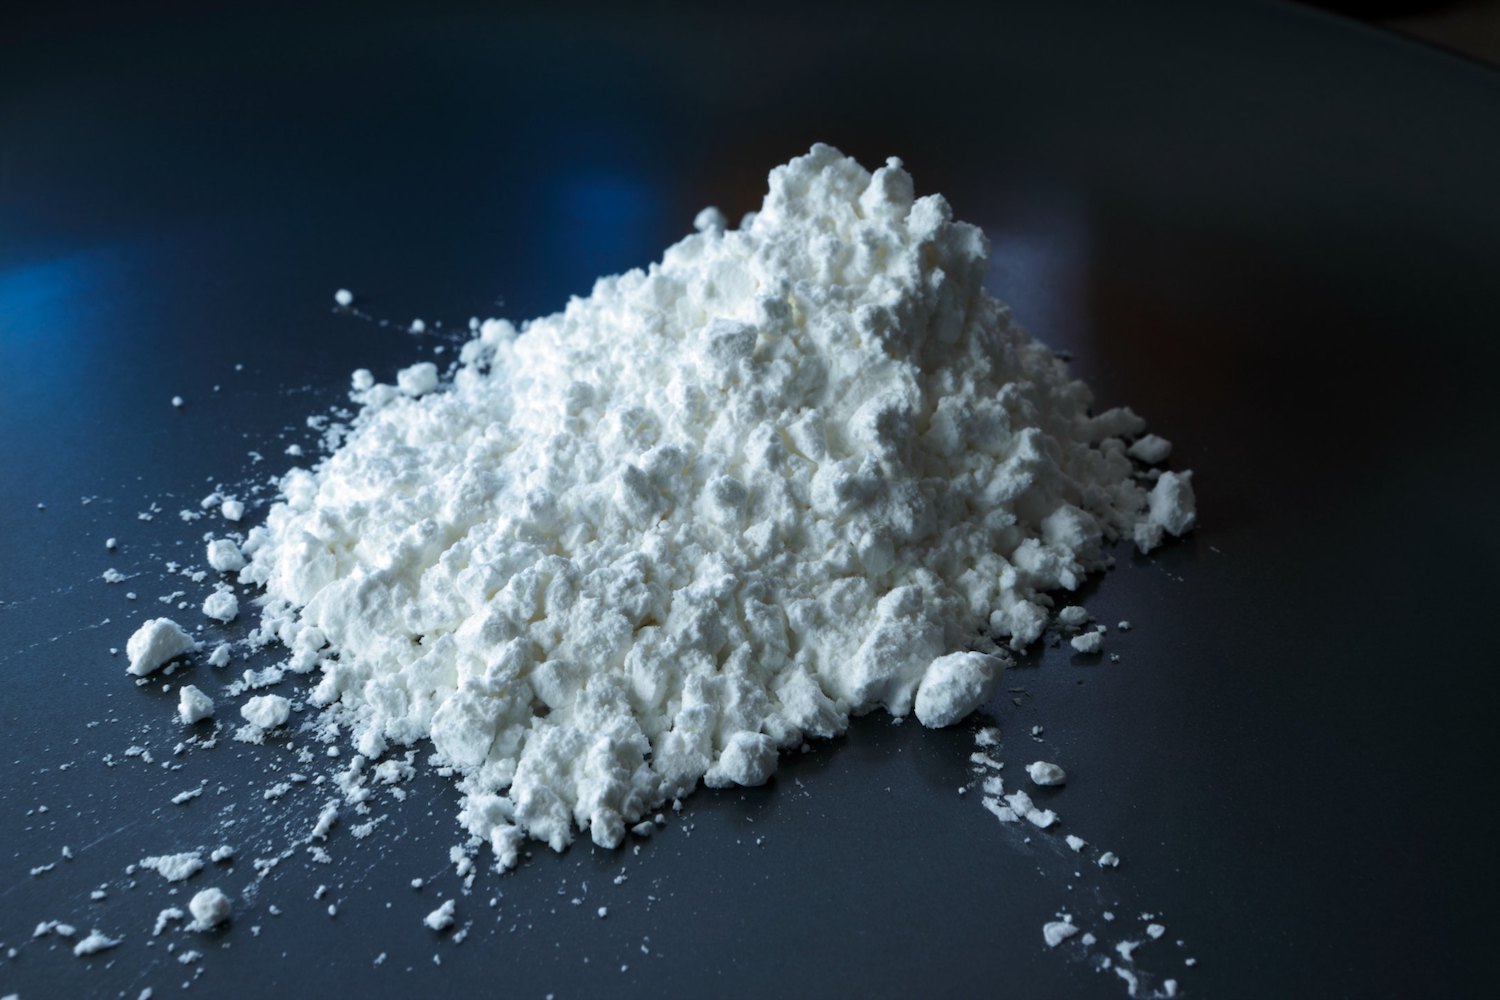 Canadá legalizará la cocaína, según predicen las startups que apoyan la despenalización en todo el país